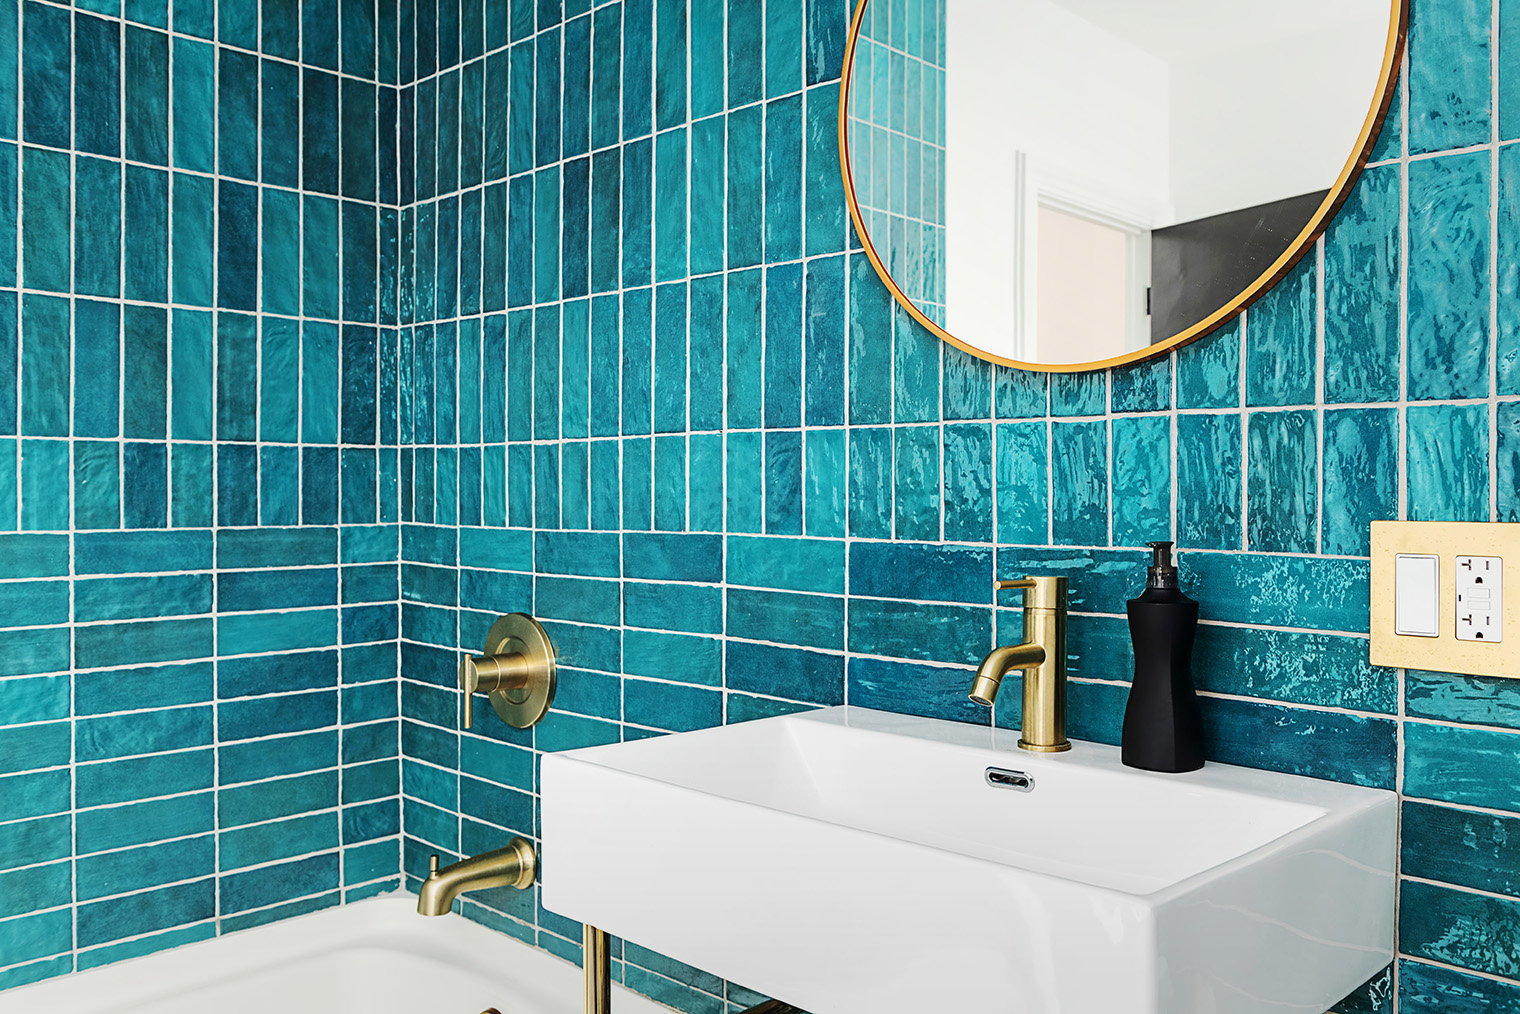 Чтобы сделать ванную оригинальной и при этом не переборщить с шумом, можно взять цветную плитку. Фотография: Fio Creative / Shutterstock